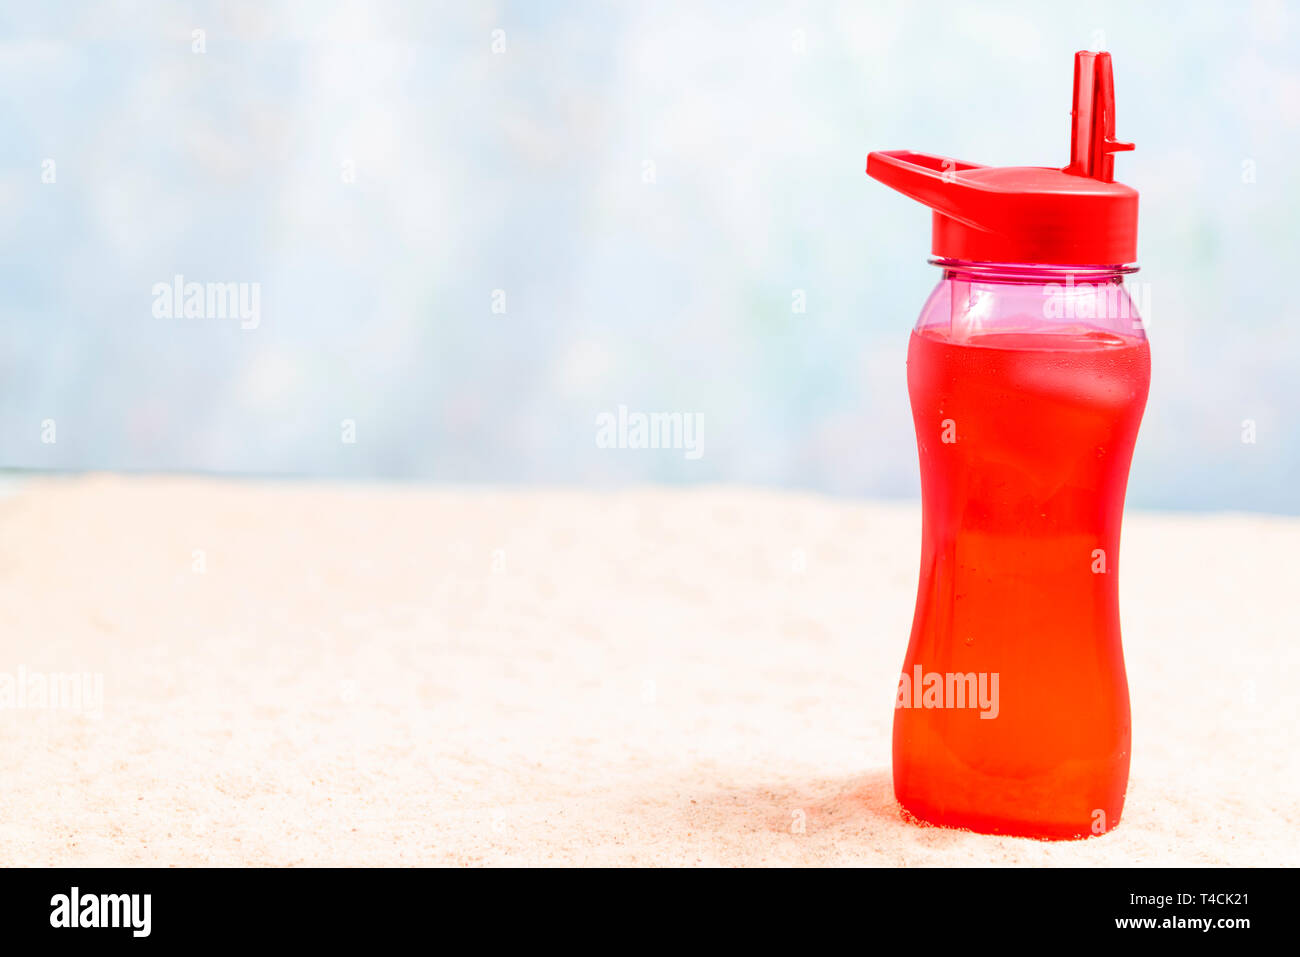 Inquadratura orizzontale di un fuori fuoco sfondo sulla spiaggia con una bevanda di colore rosso per un puntello. Bere è sul lato destro. Copia dello spazio. Foto Stock